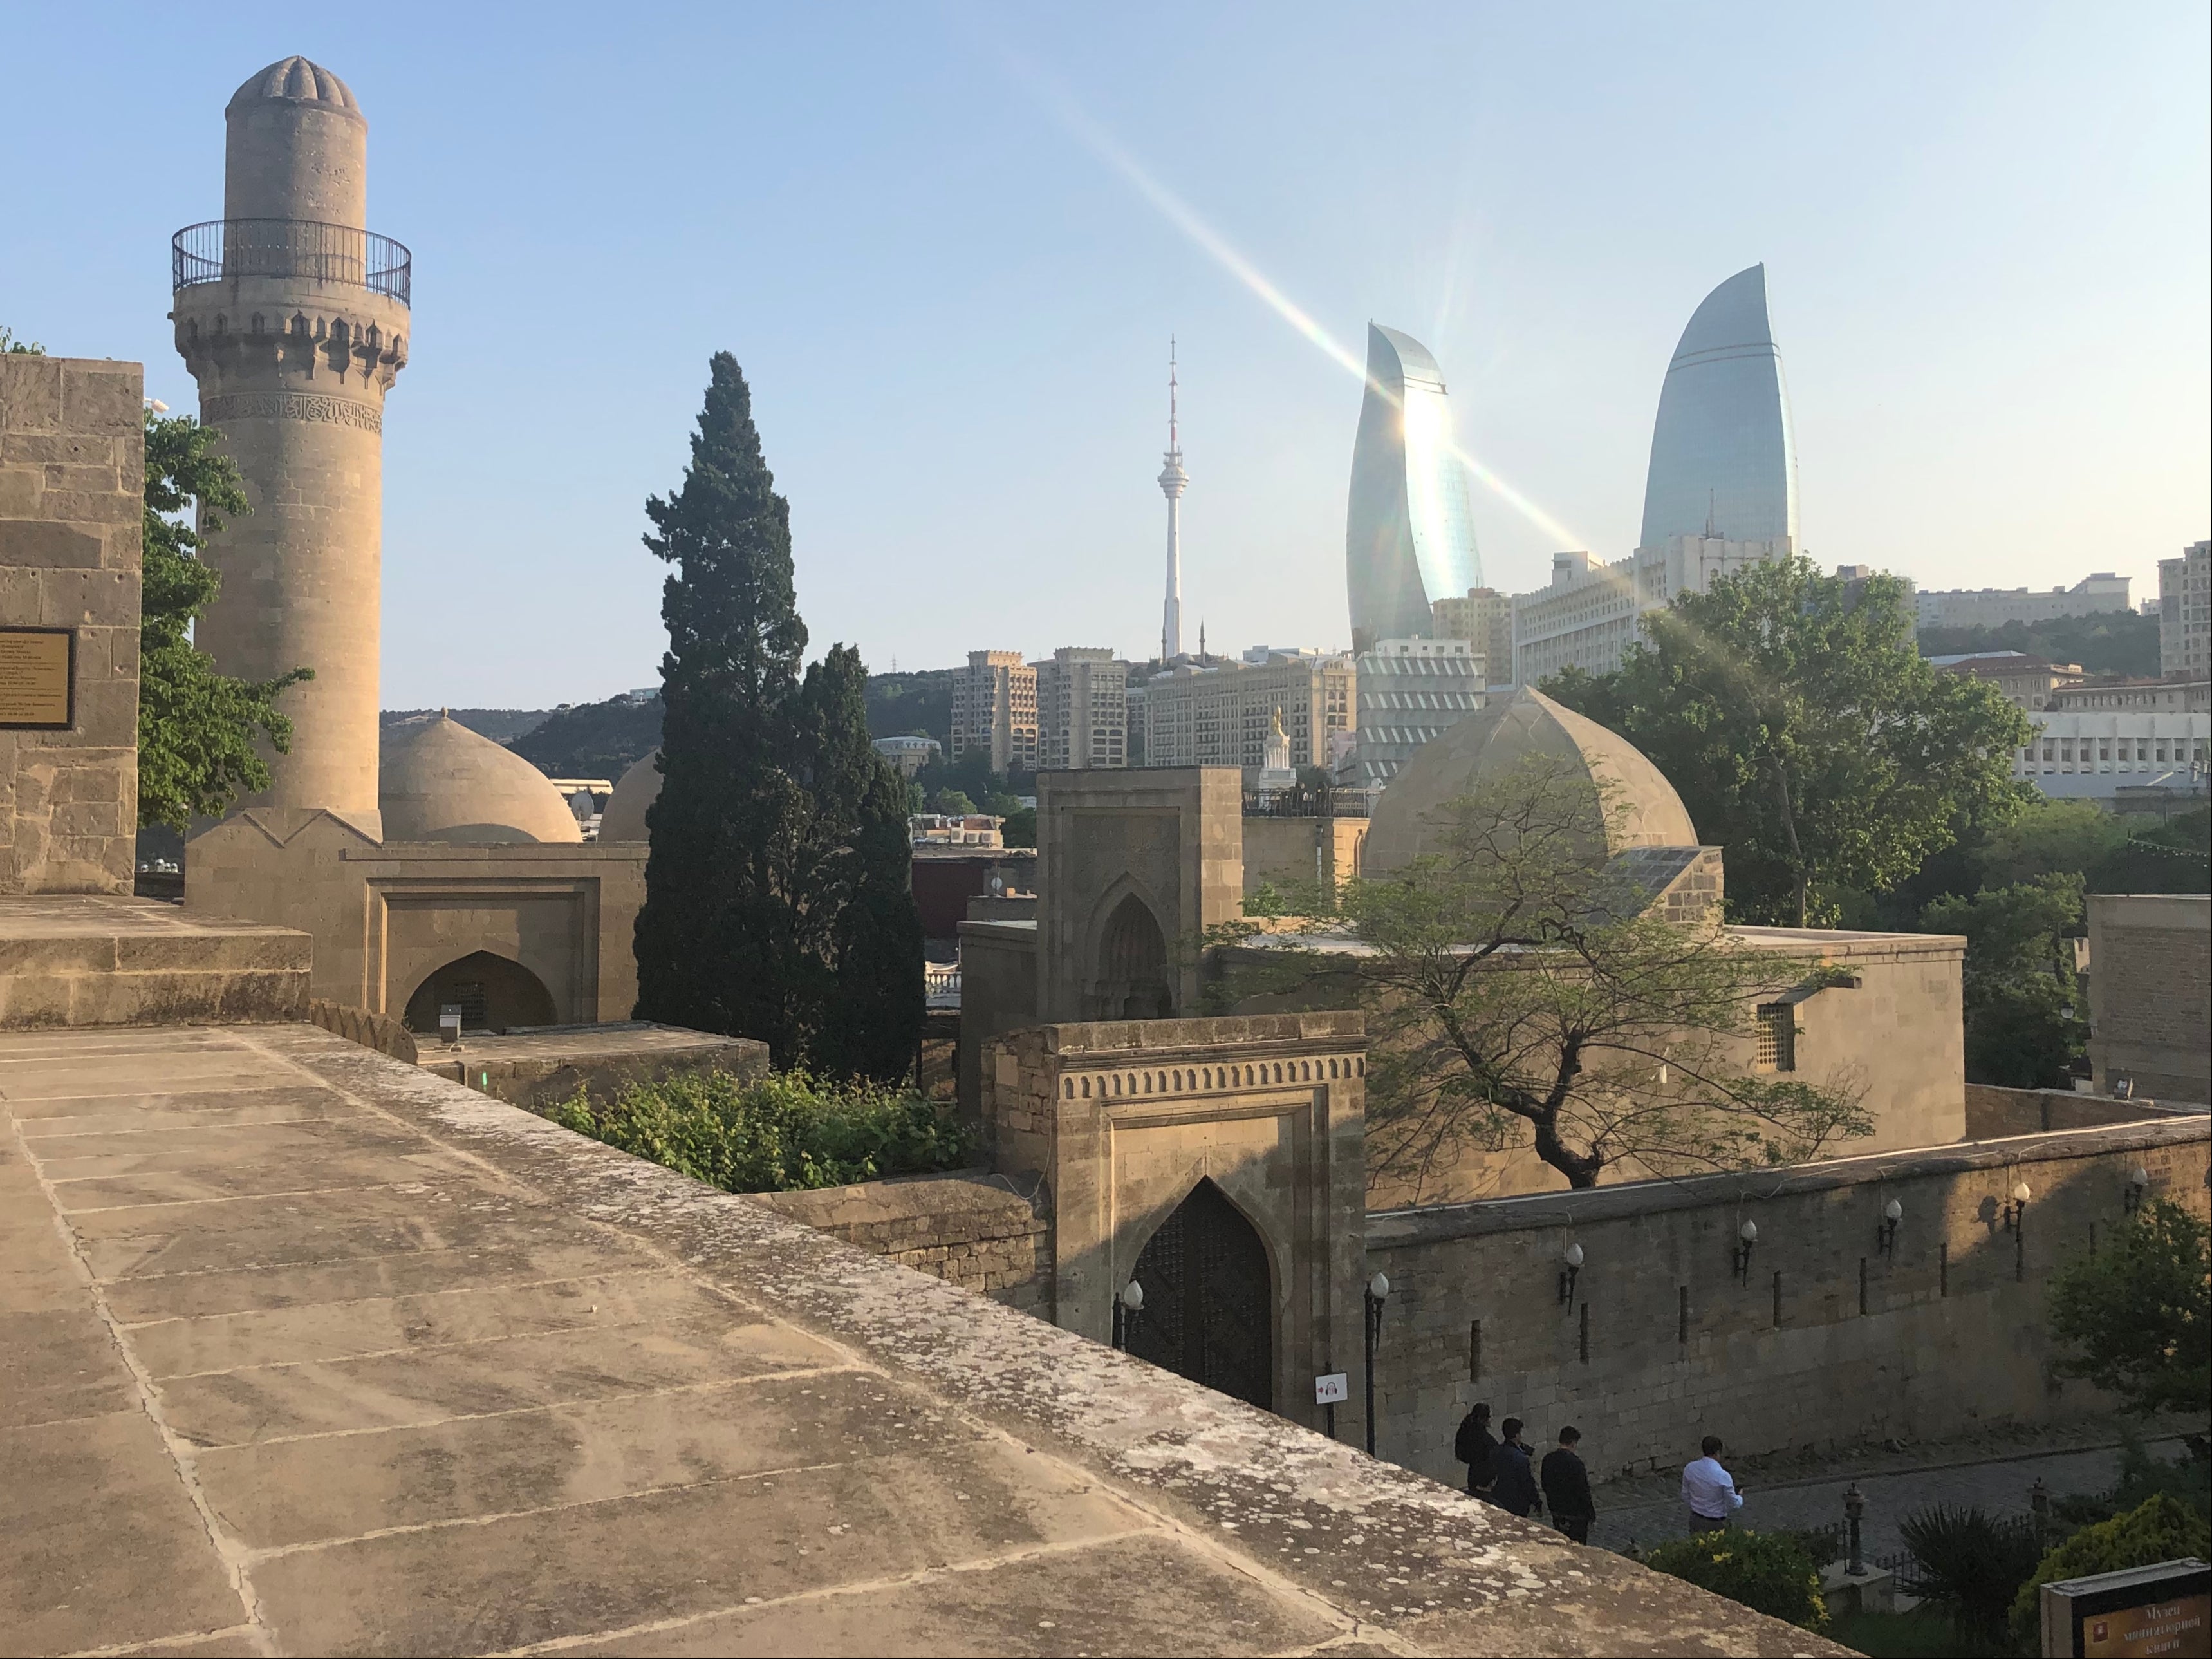 Eastern promise: the skyline of Baku, Azerbaijan